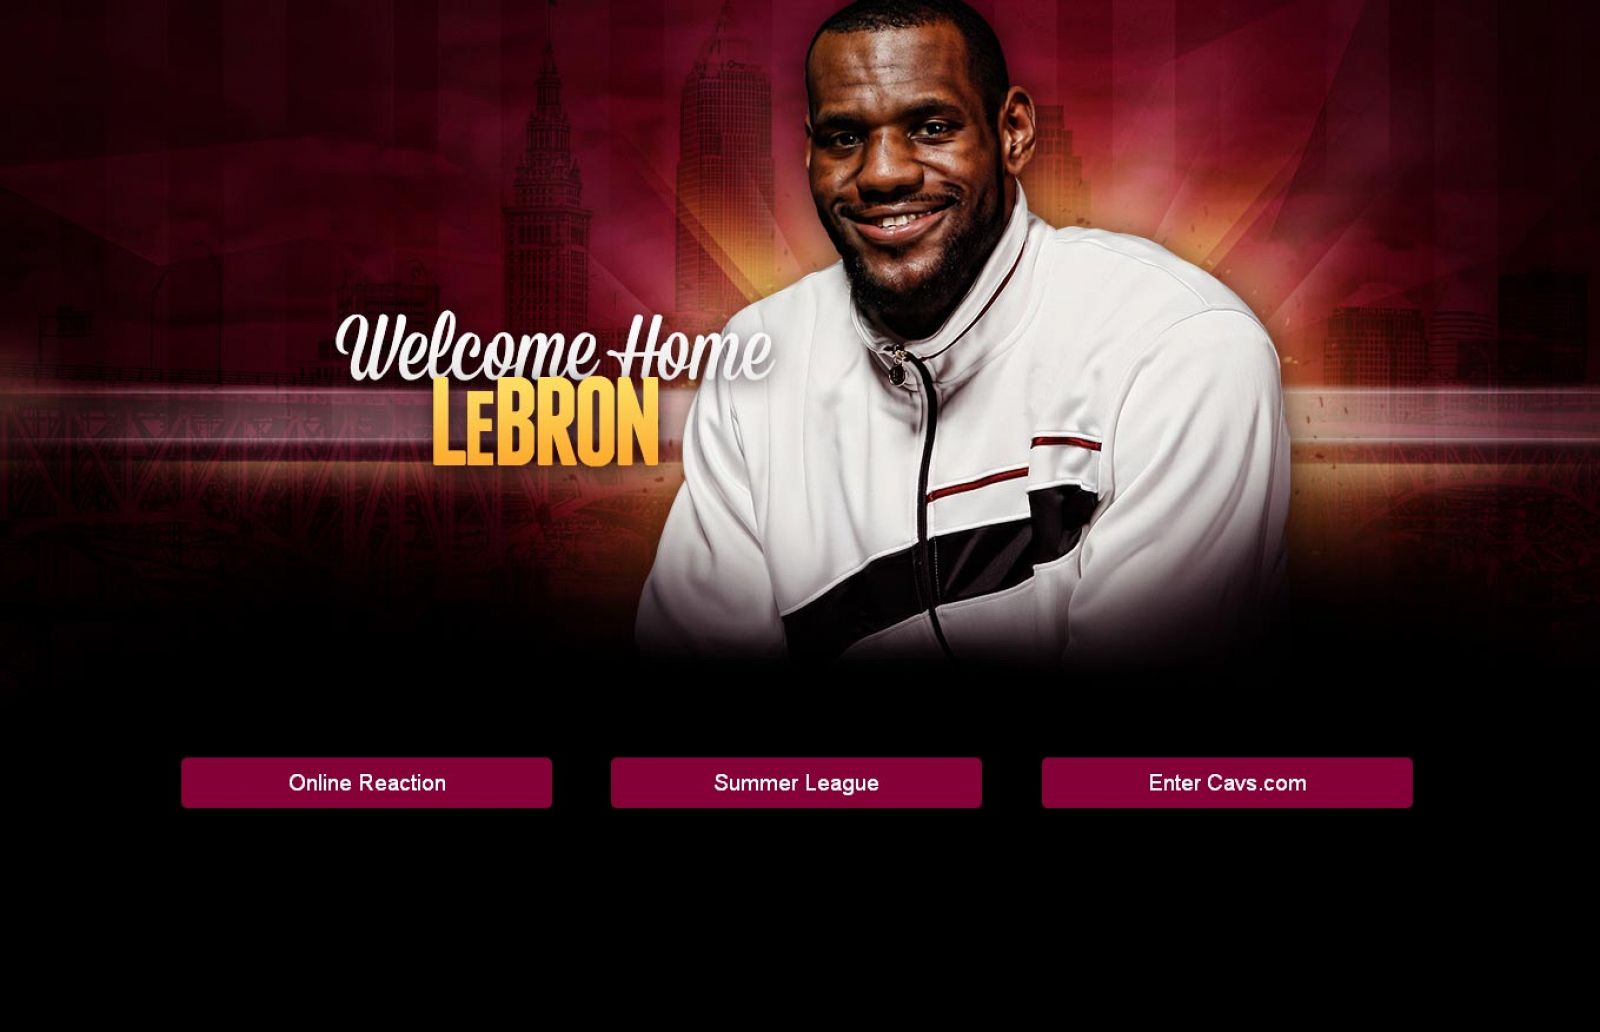 La web oficial de Cleveland Cavaliers anuncia el regreso de LeBron James con un mensaje: "Bienvenido a casa"